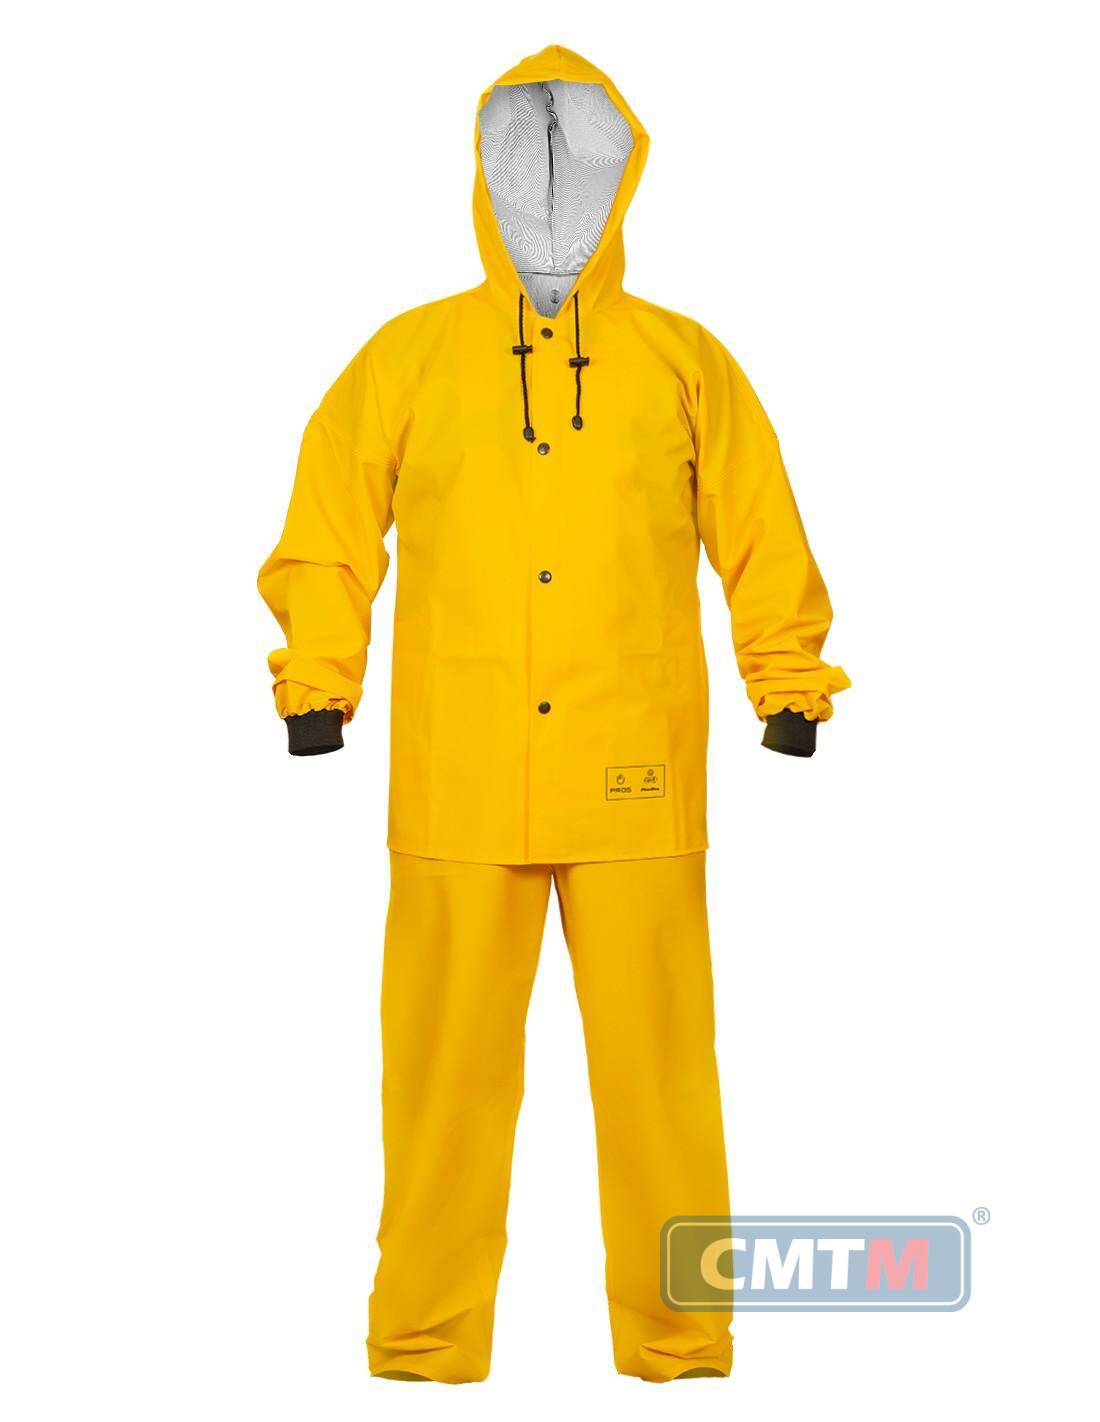 Ubranie wodoochronne AJ 101/001 żółte, rozmiar 50 S